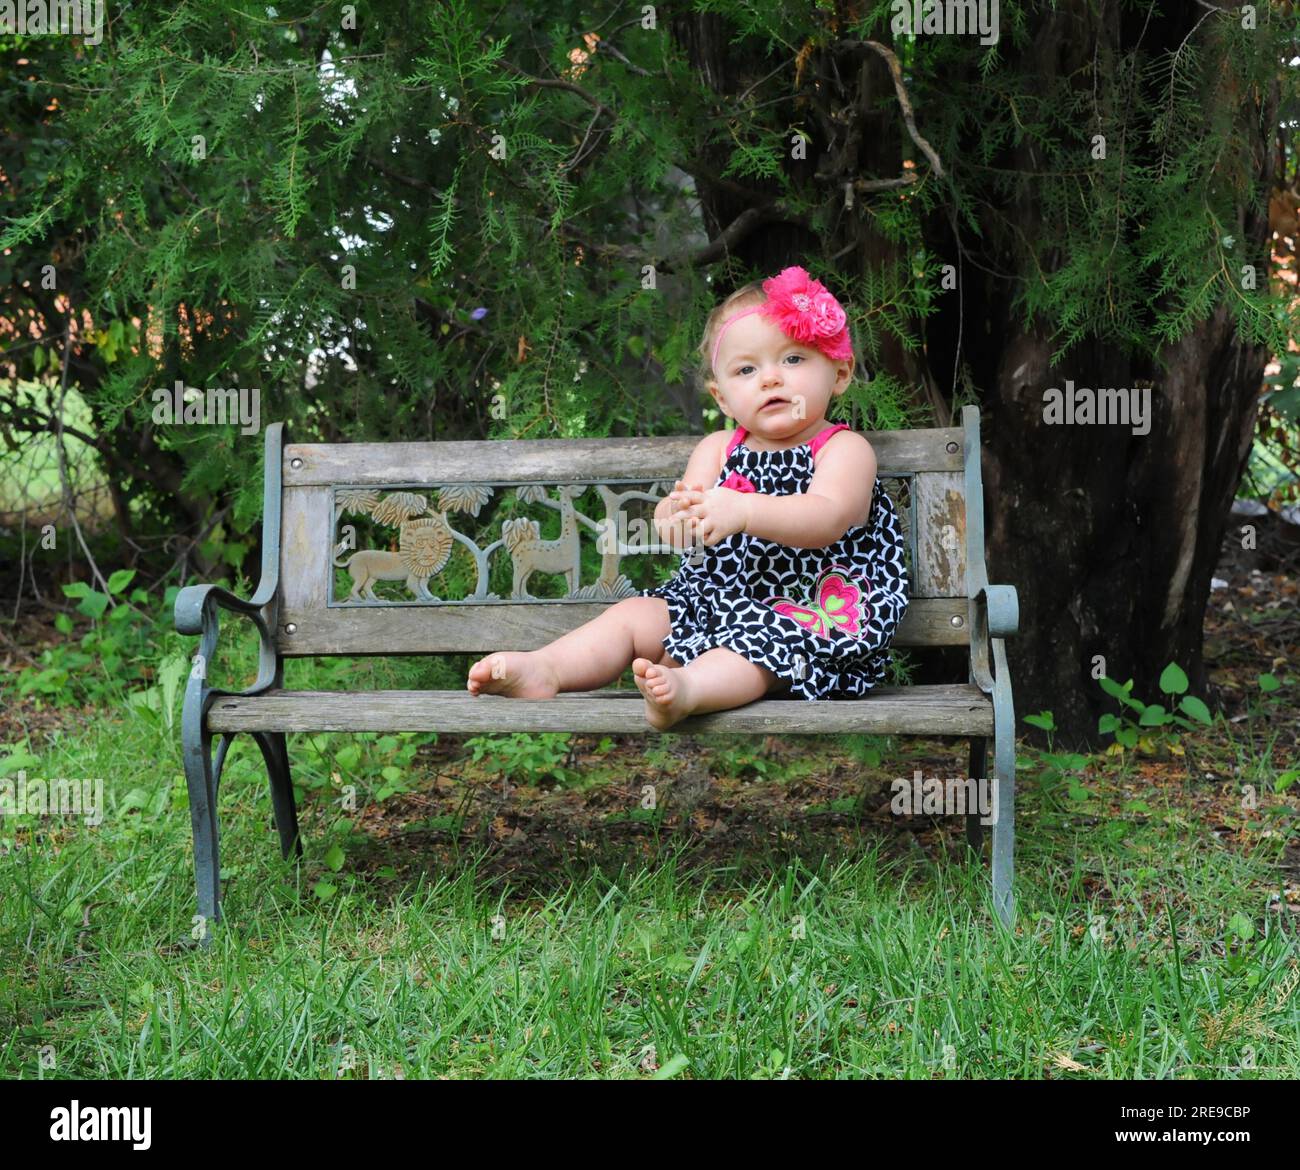 Petite fille assise sur un banc de parc en bois. Elle porte une robe d'été en noir et blanc. Ses cheveux ont un noeud de cheveux de fleur rose. Ses pensées sont quies Banque D'Images